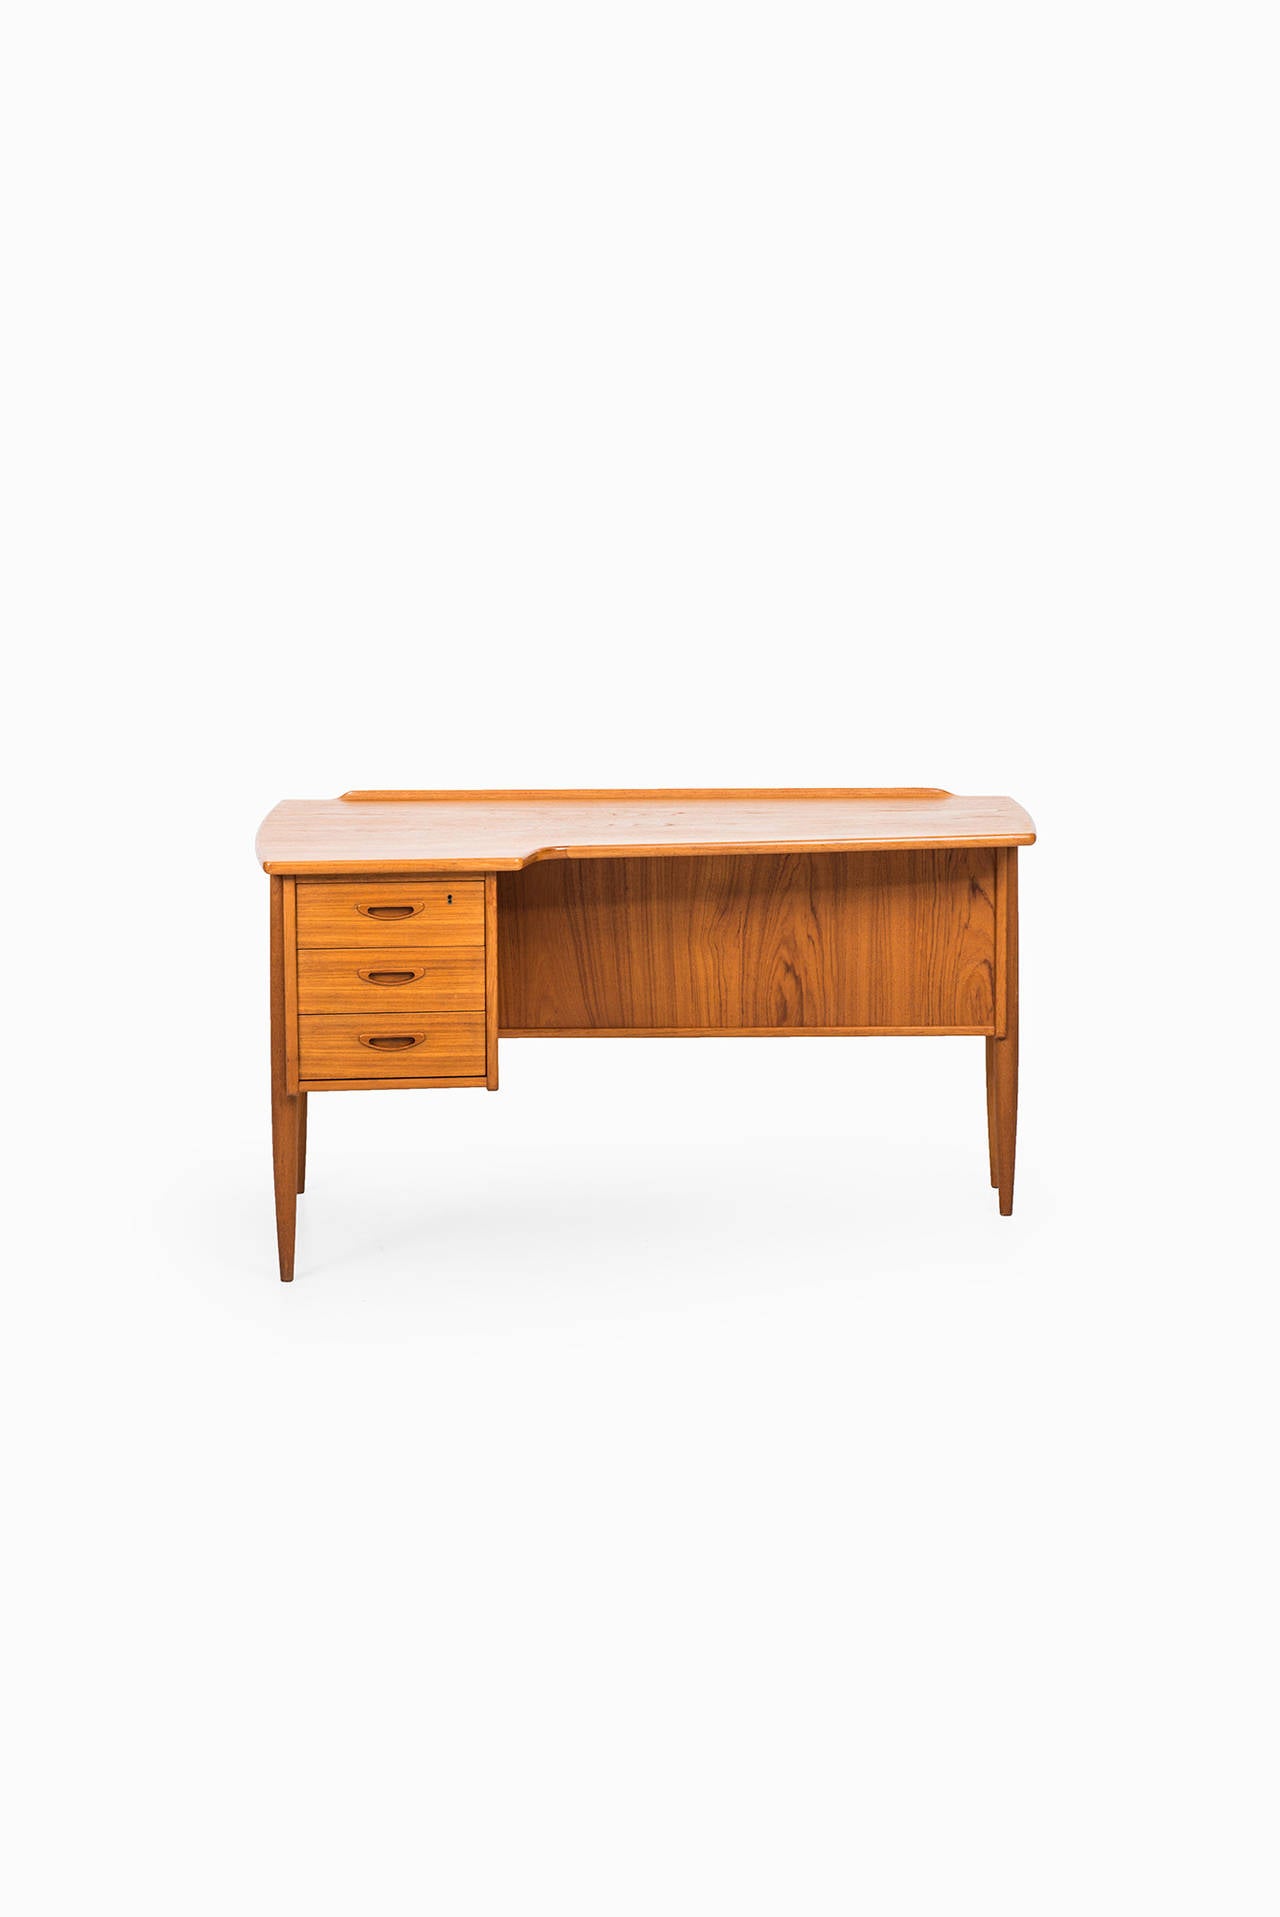 Swedish Göran Strand Desk Model A10 by Lelångs Möbelfabrik in Sweden